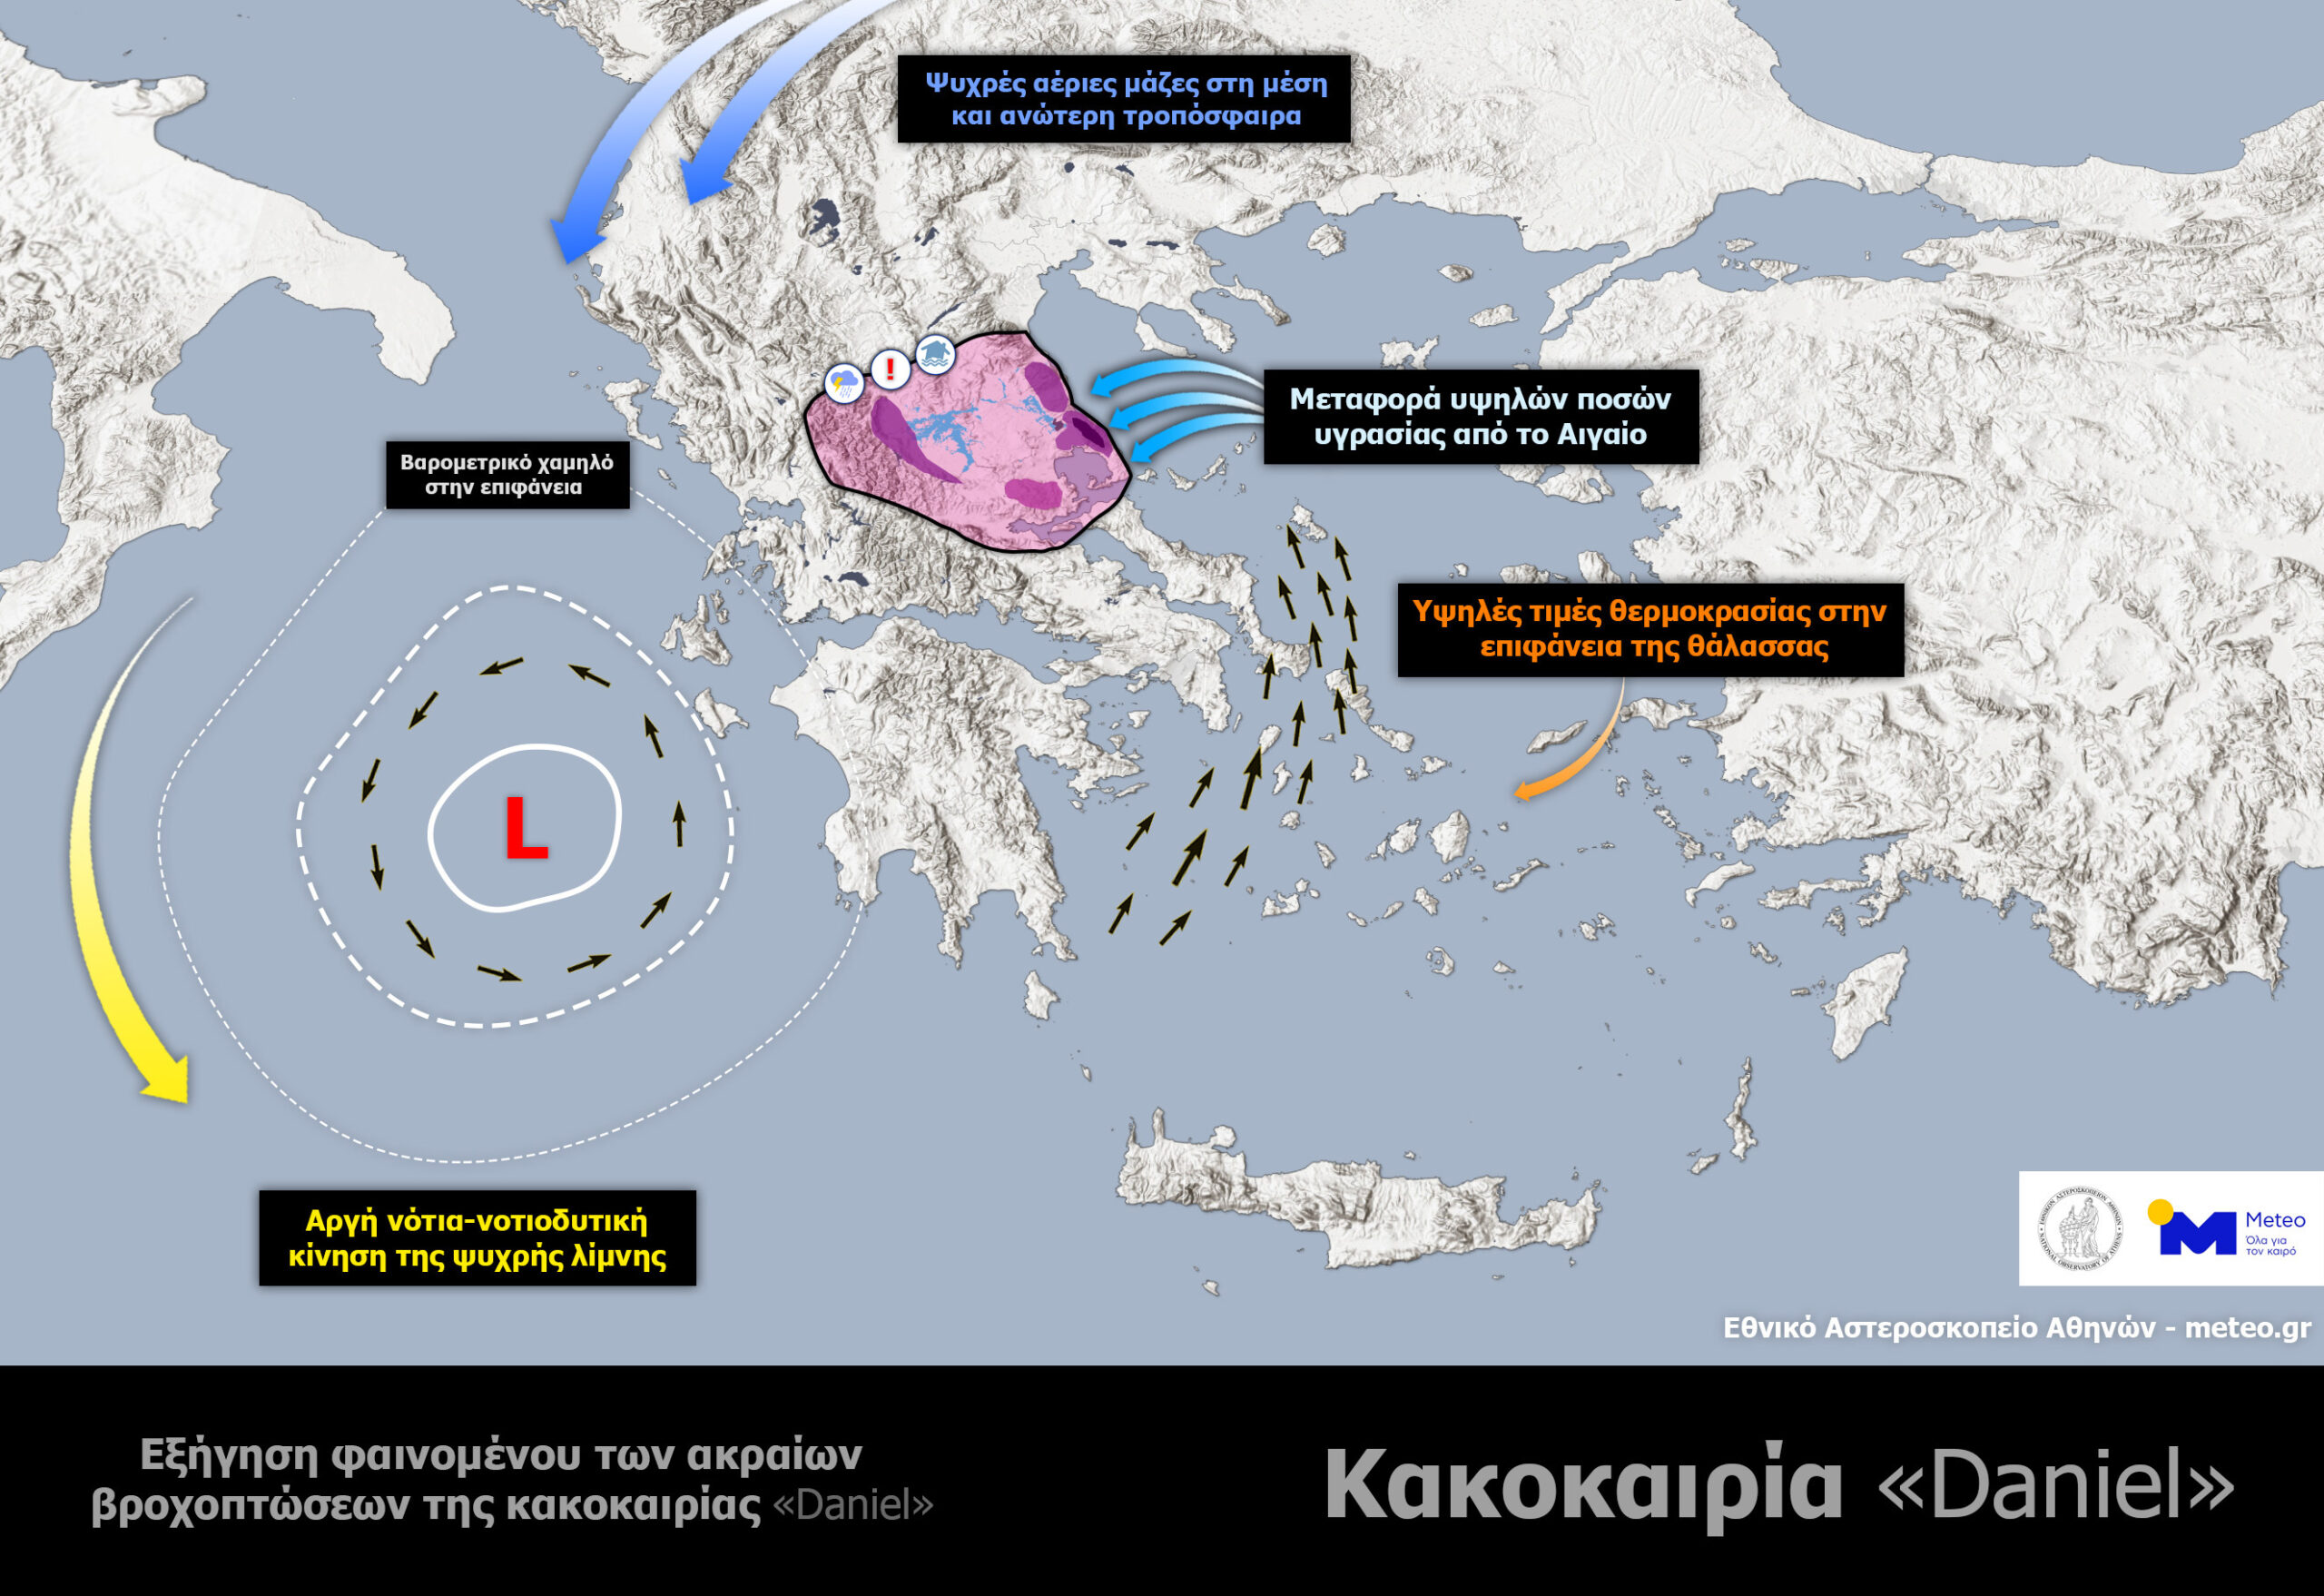 Κακοκαιρία Daniel: Οι τέσσερις λόγοι για τις ακραίες βροχοπτώσεις στη Θεσσαλία